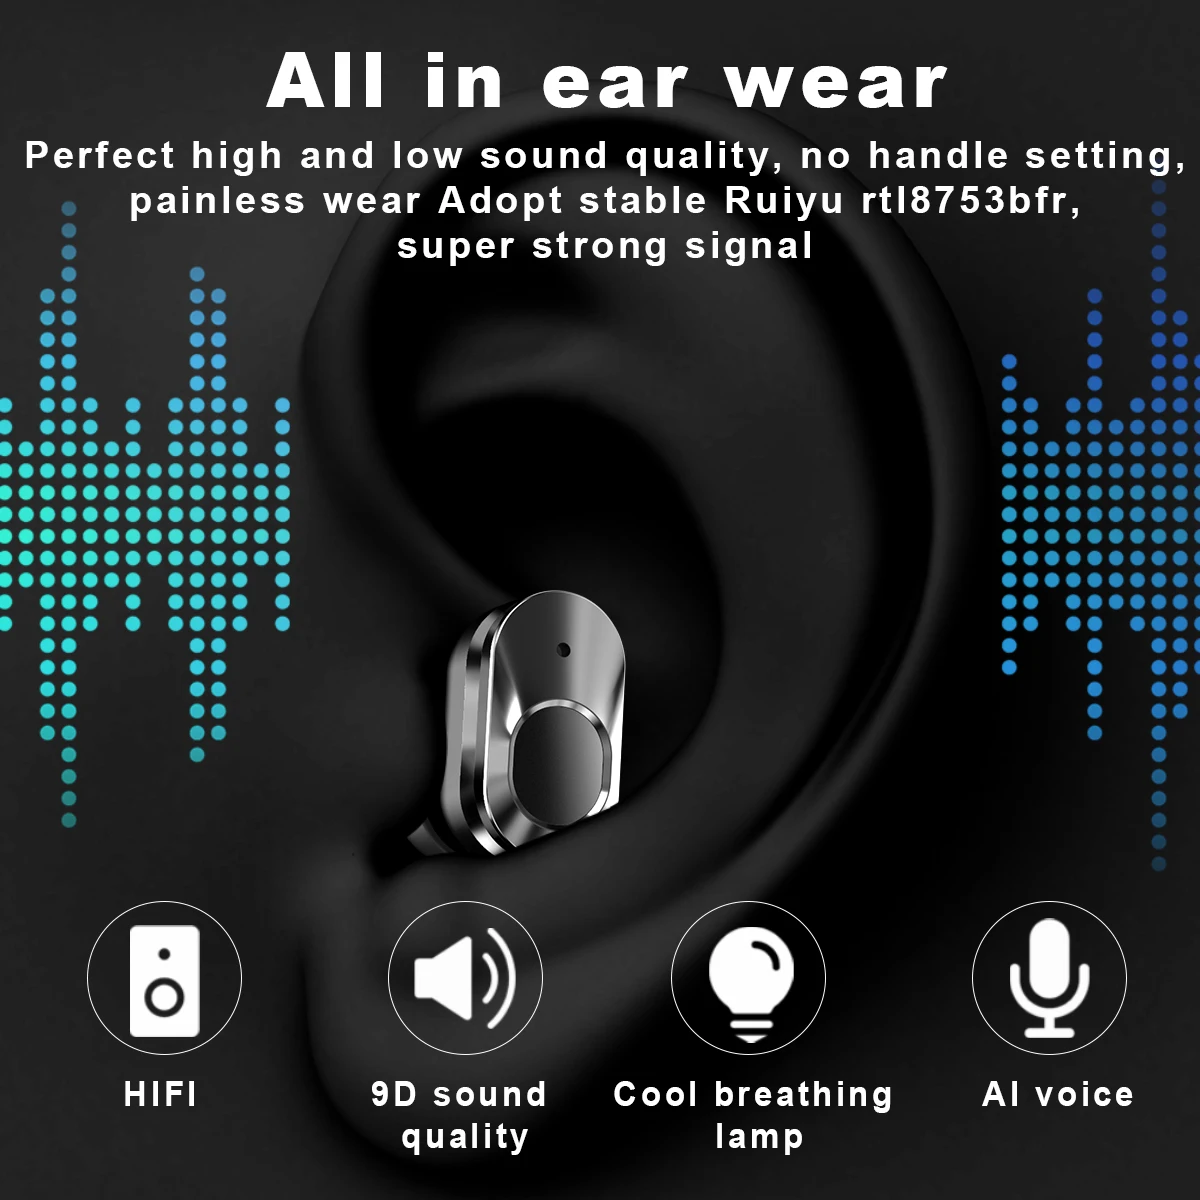 Оригинални Bluetooth-слушалки T92, HIFI качество на звука, водоустойчив тапи за уши, се прилагат за преносими зареждане умни часа T92